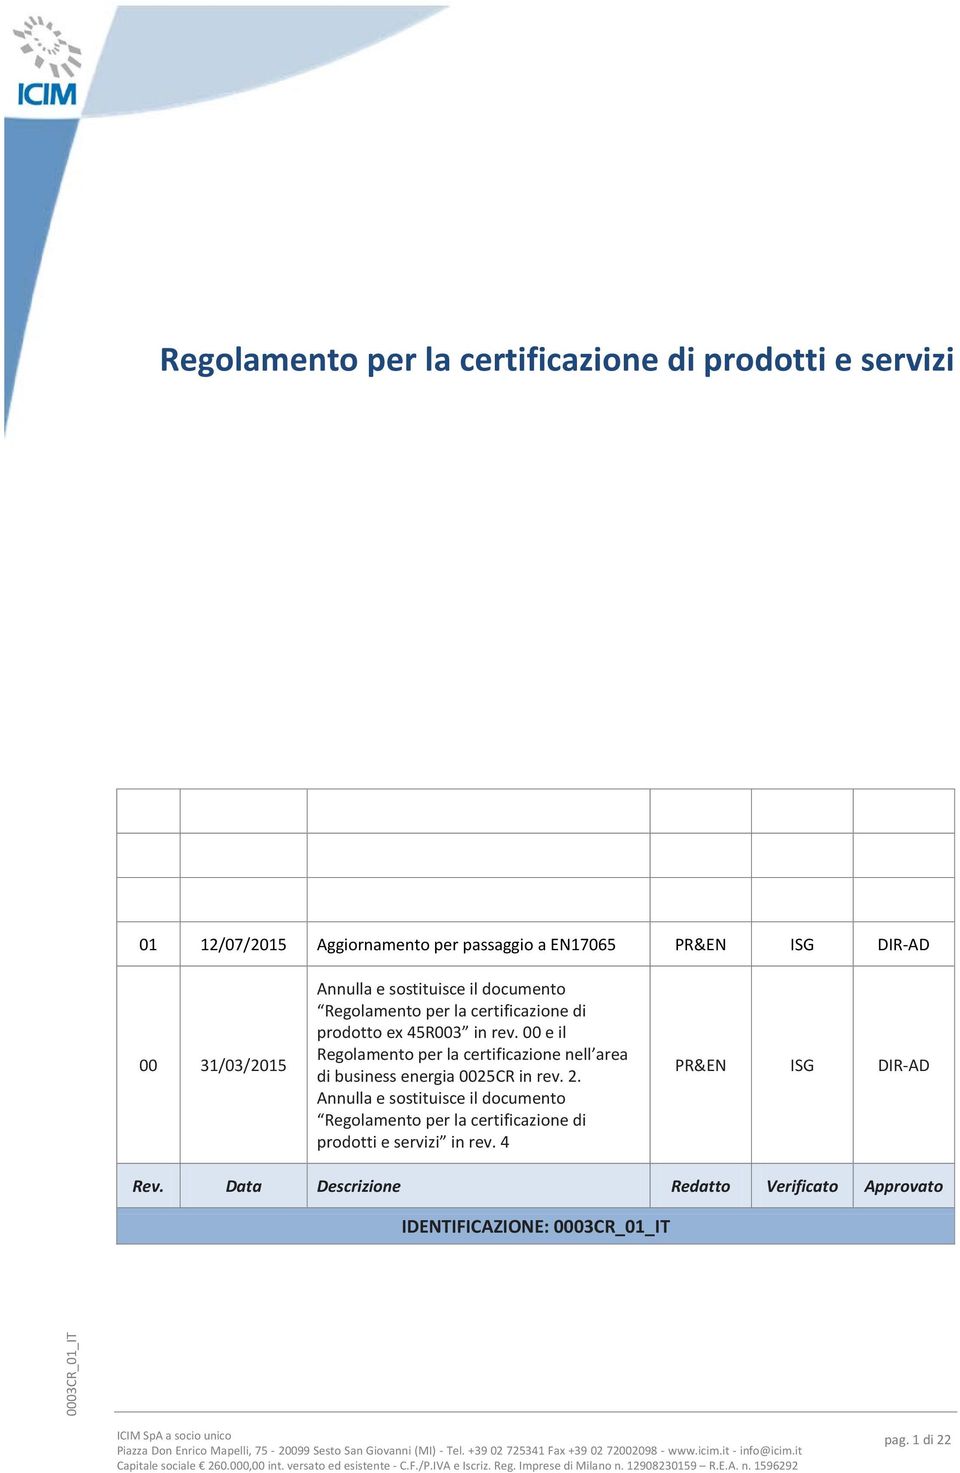 00 e il Regolamento per la certificazione nell area di business energia 0025CR in rev. 2.